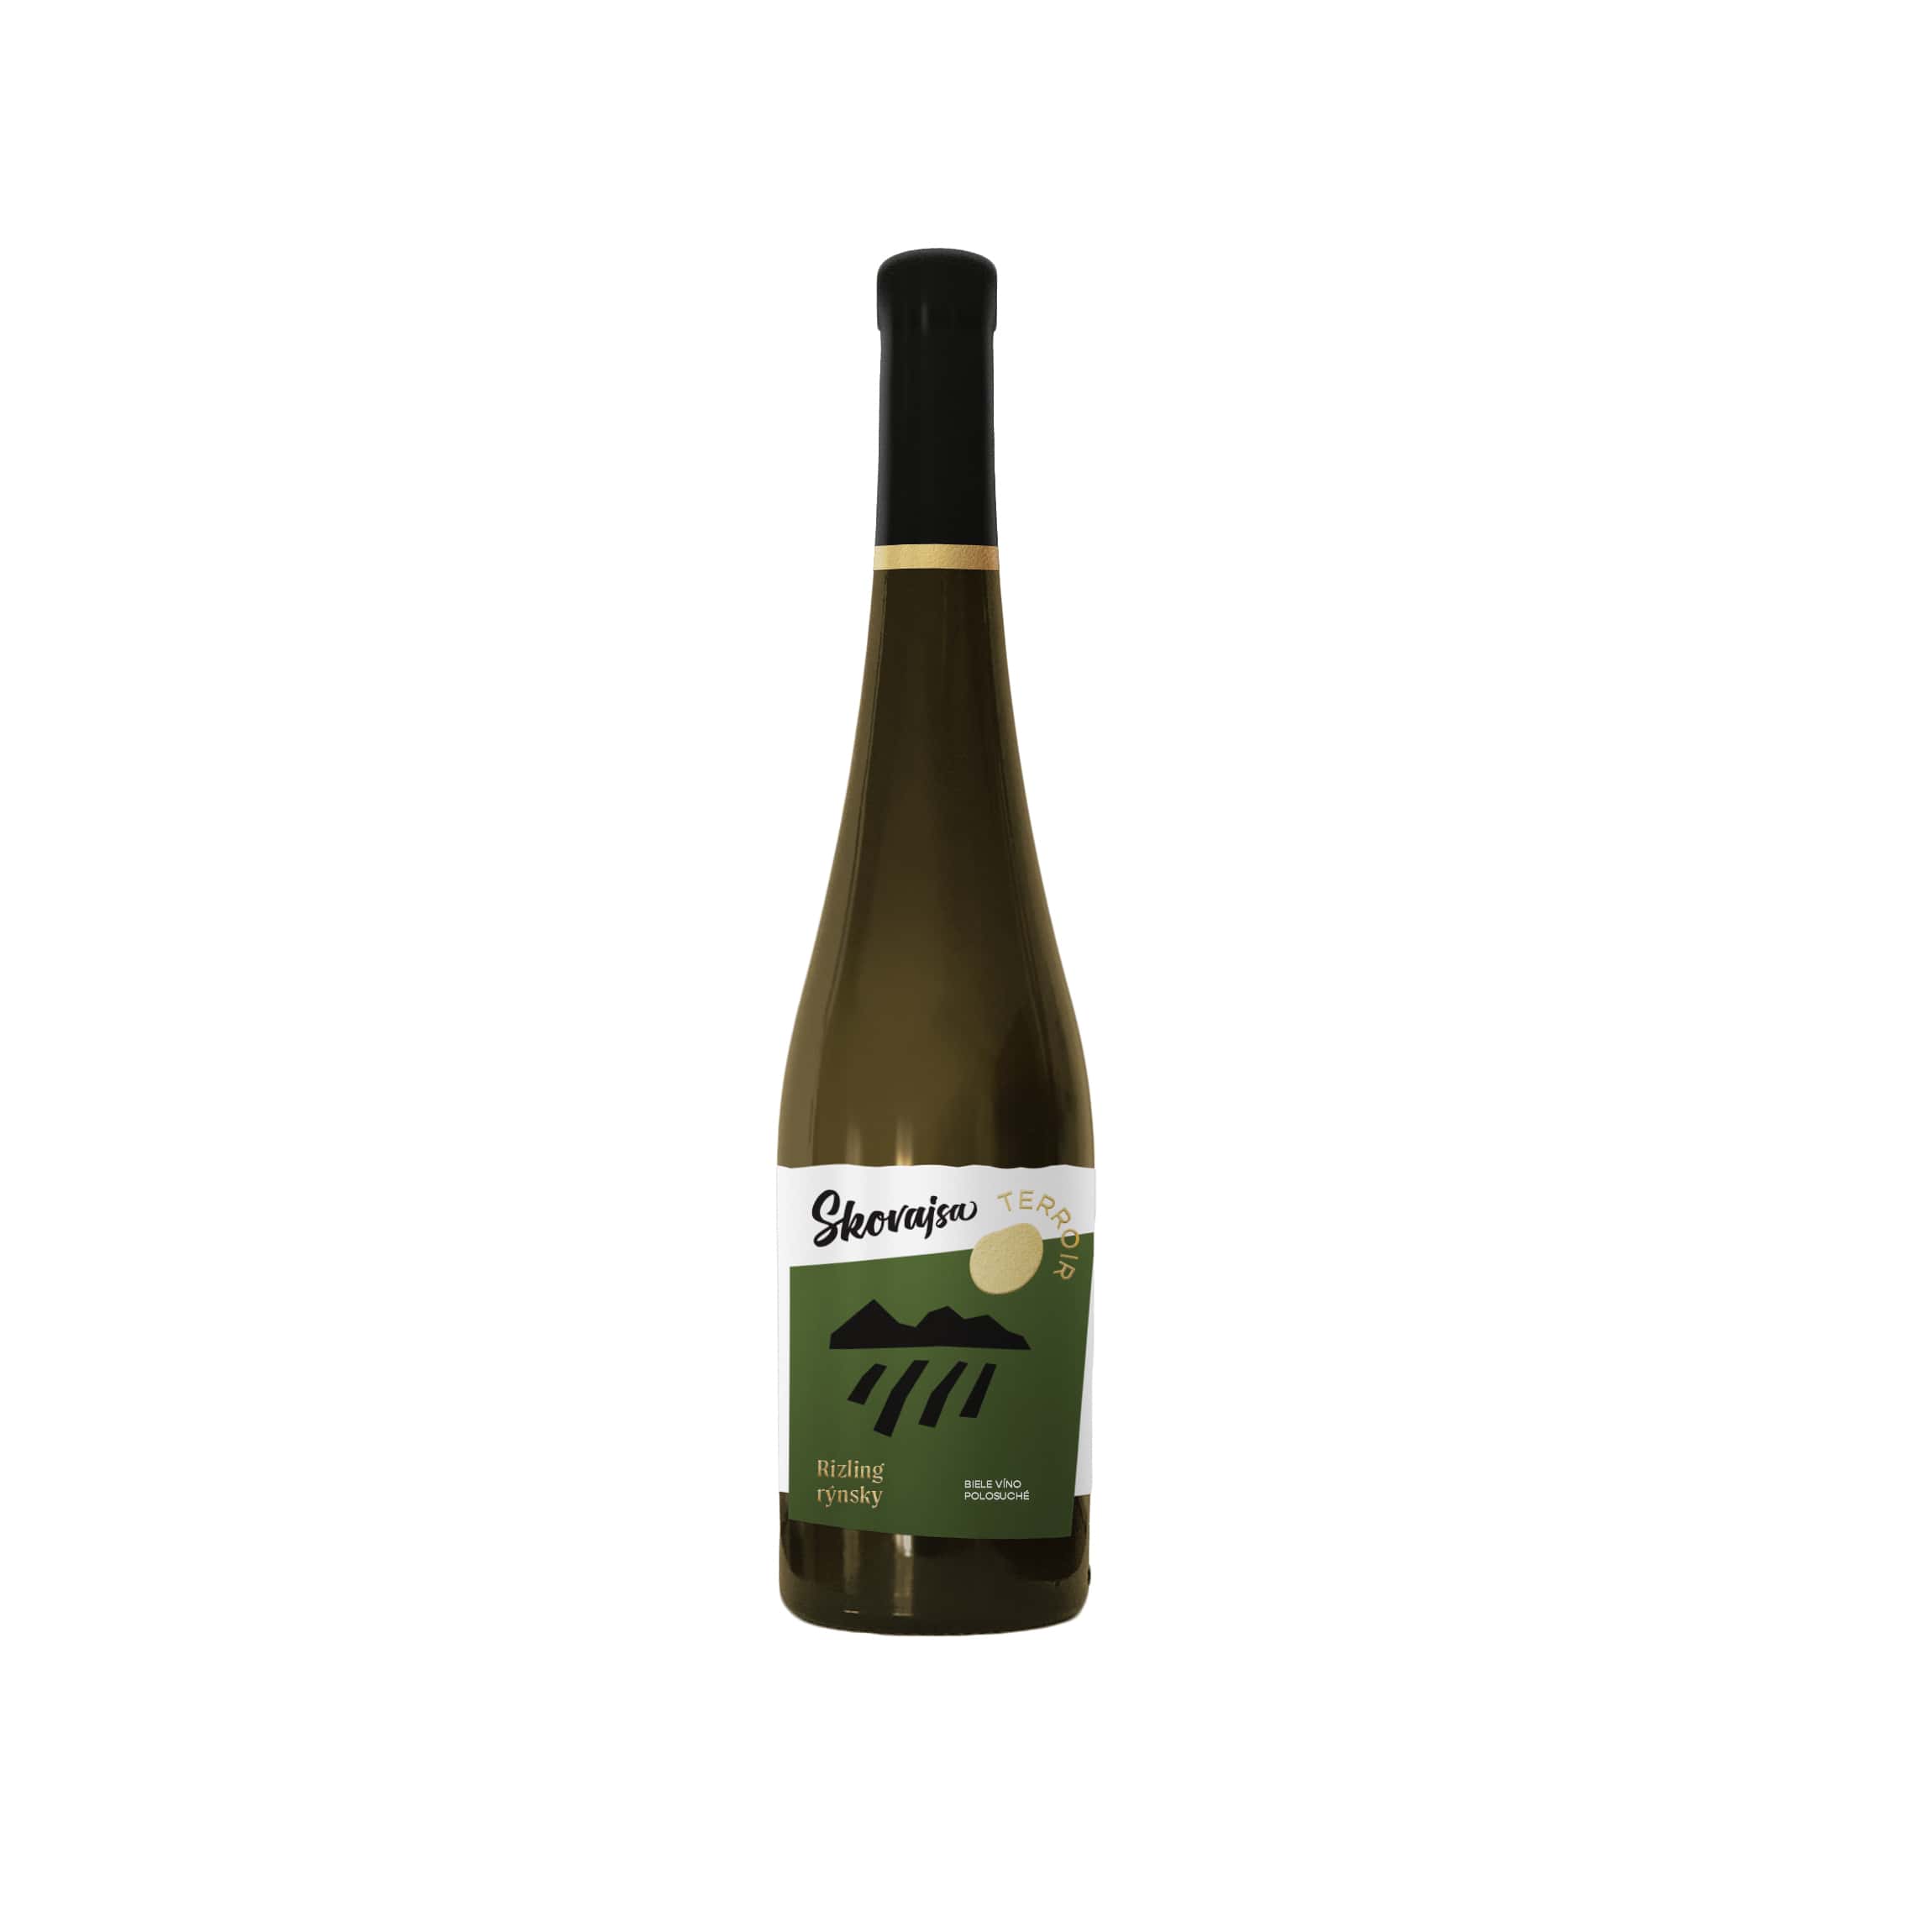 Rizling rýnsky TERROIR - Skovajsa, biele suché víno, špeciálna edícia TERROIR.